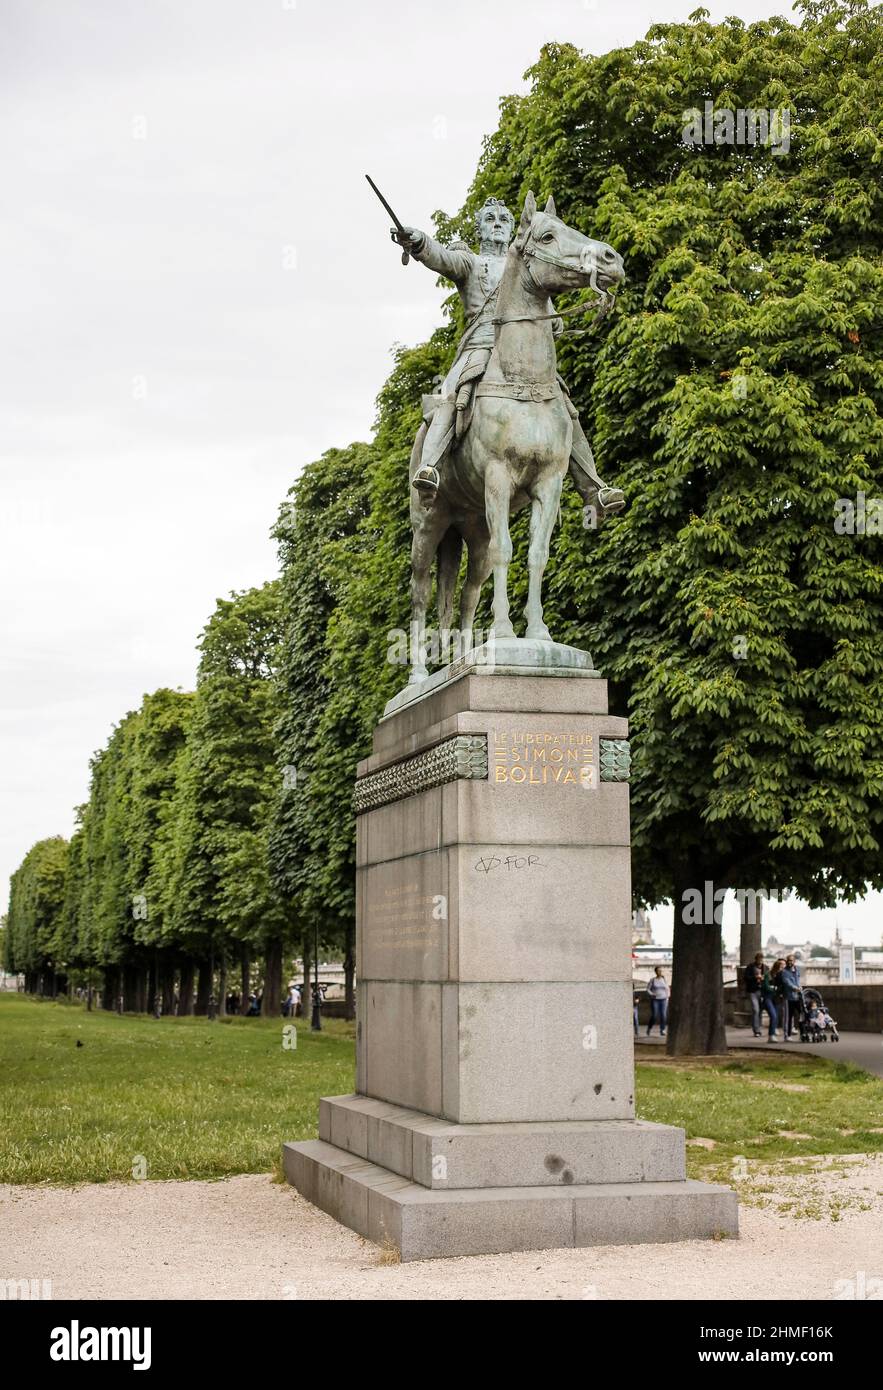 Statue des südamerikanischen Befreiungsführers Simon Bolivar von Emmanuel Fremet in Cours la reine Promenade und Park in Paris, Frankreich Stockfoto